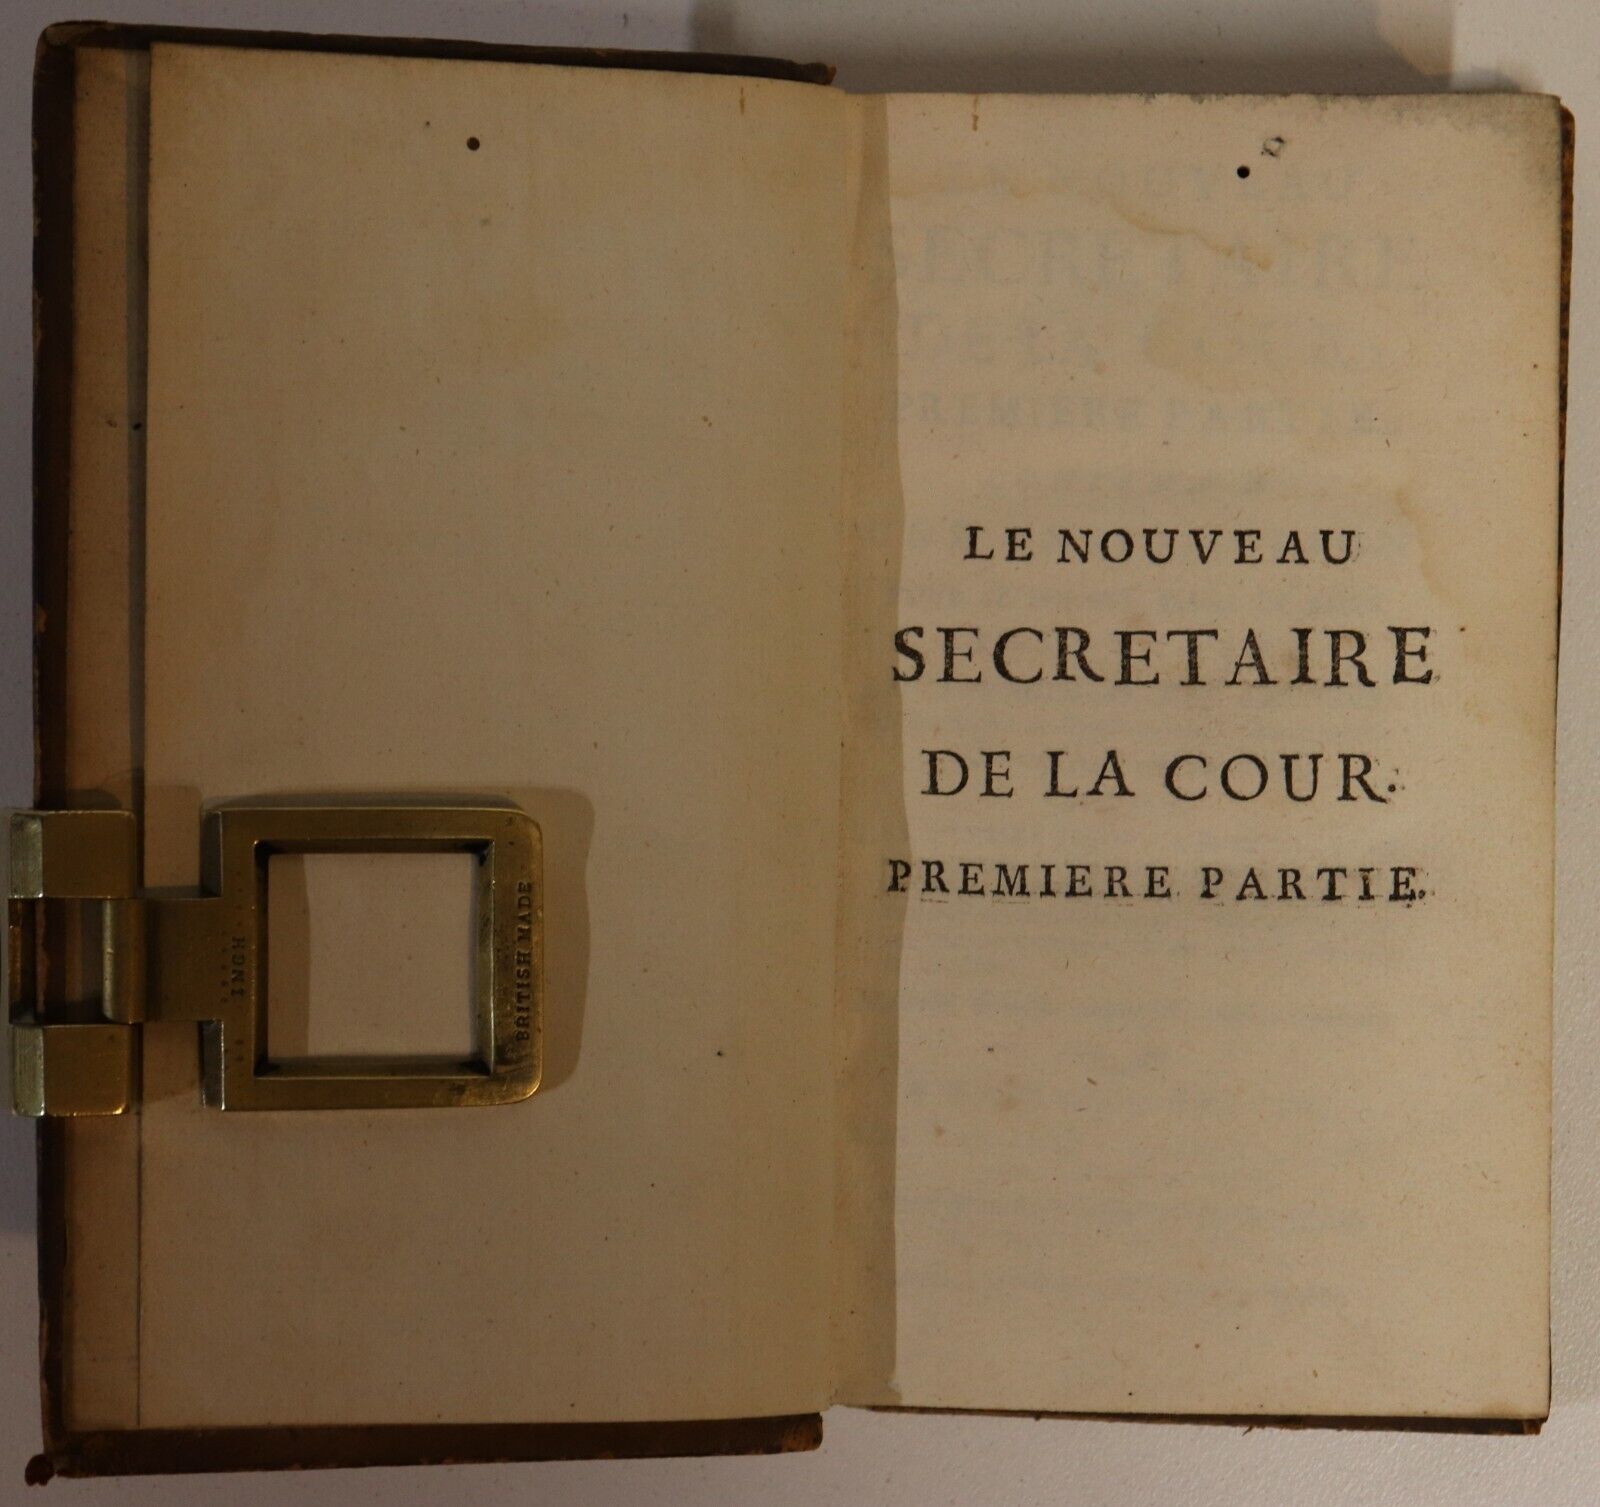 1748 Le Nouveau Secretaire De La Cour Paris French Antiquarian Book - 0